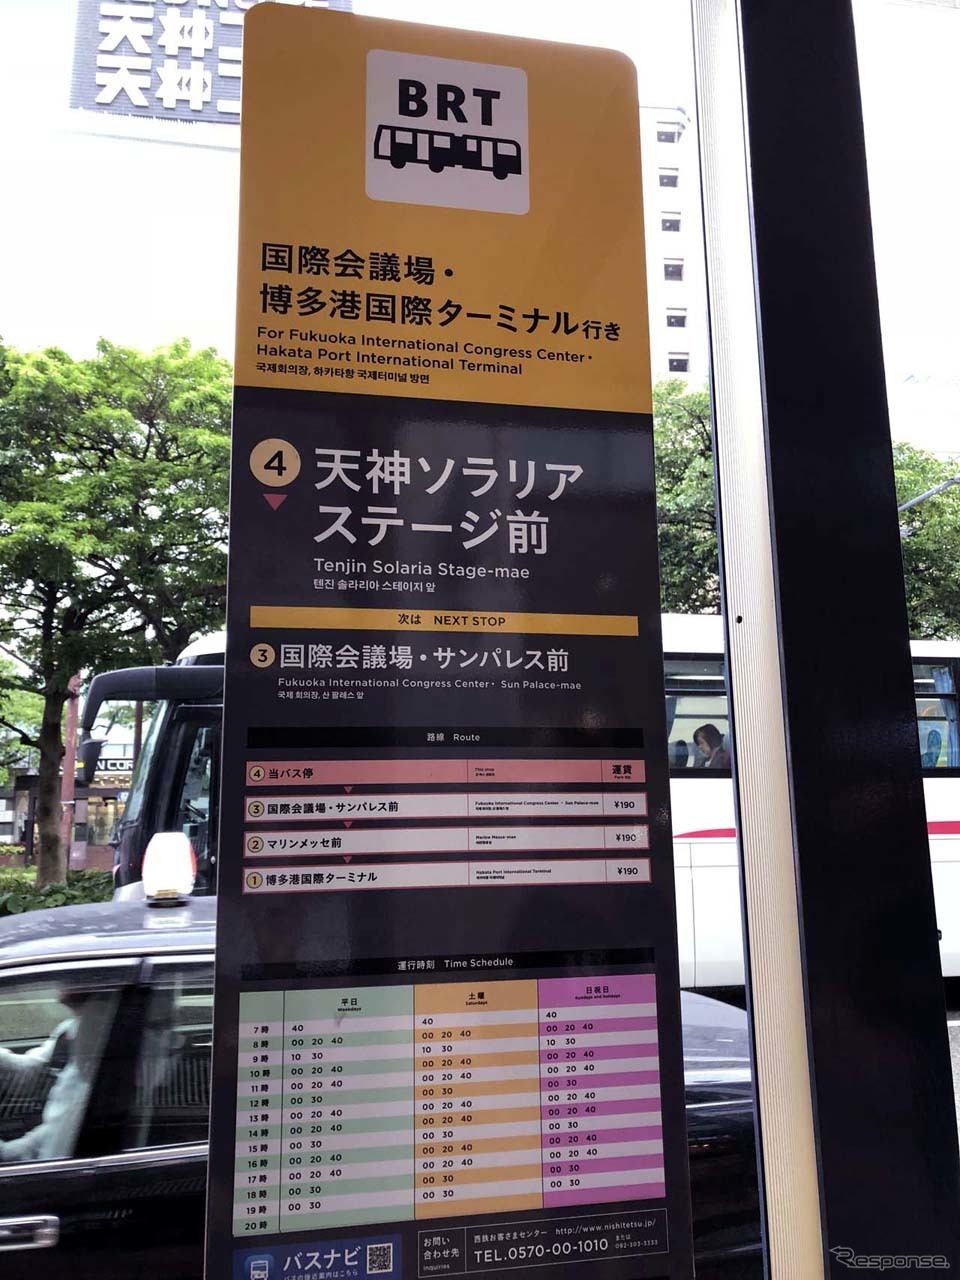 BRTは190円均一料金で乗車できる